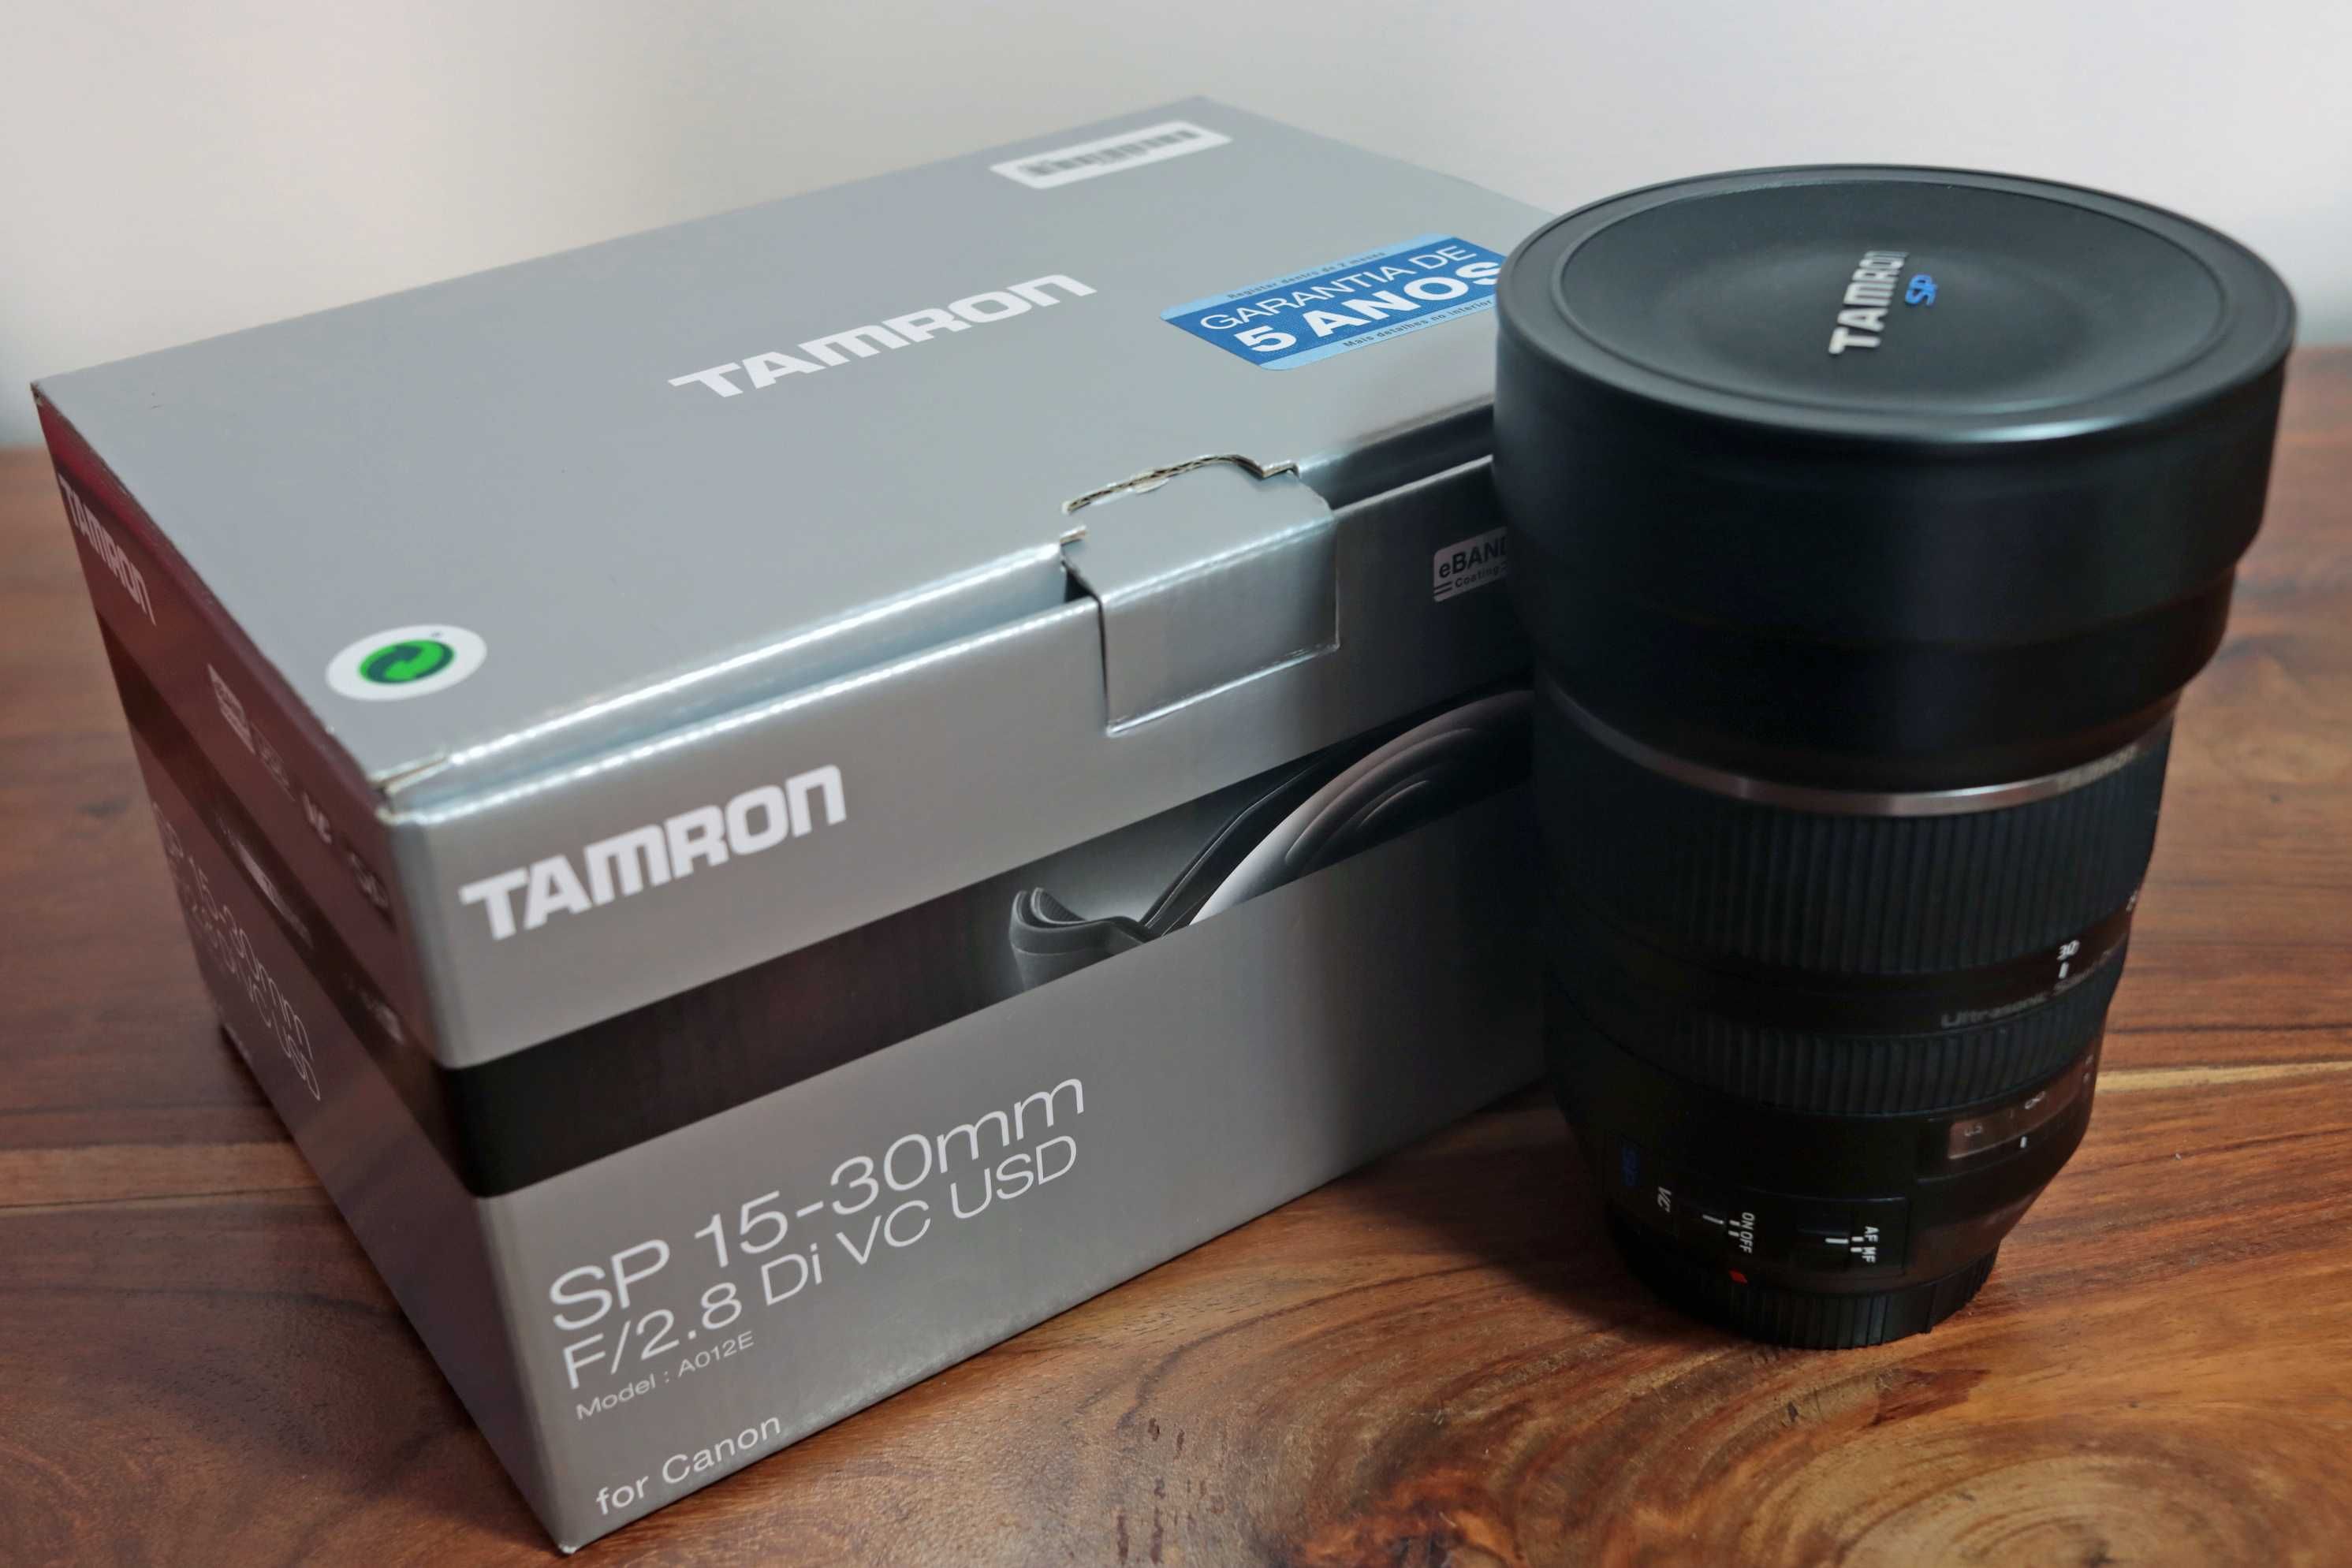 Tamron SP 15-30 mm F/2.8 Di VC USD Canon